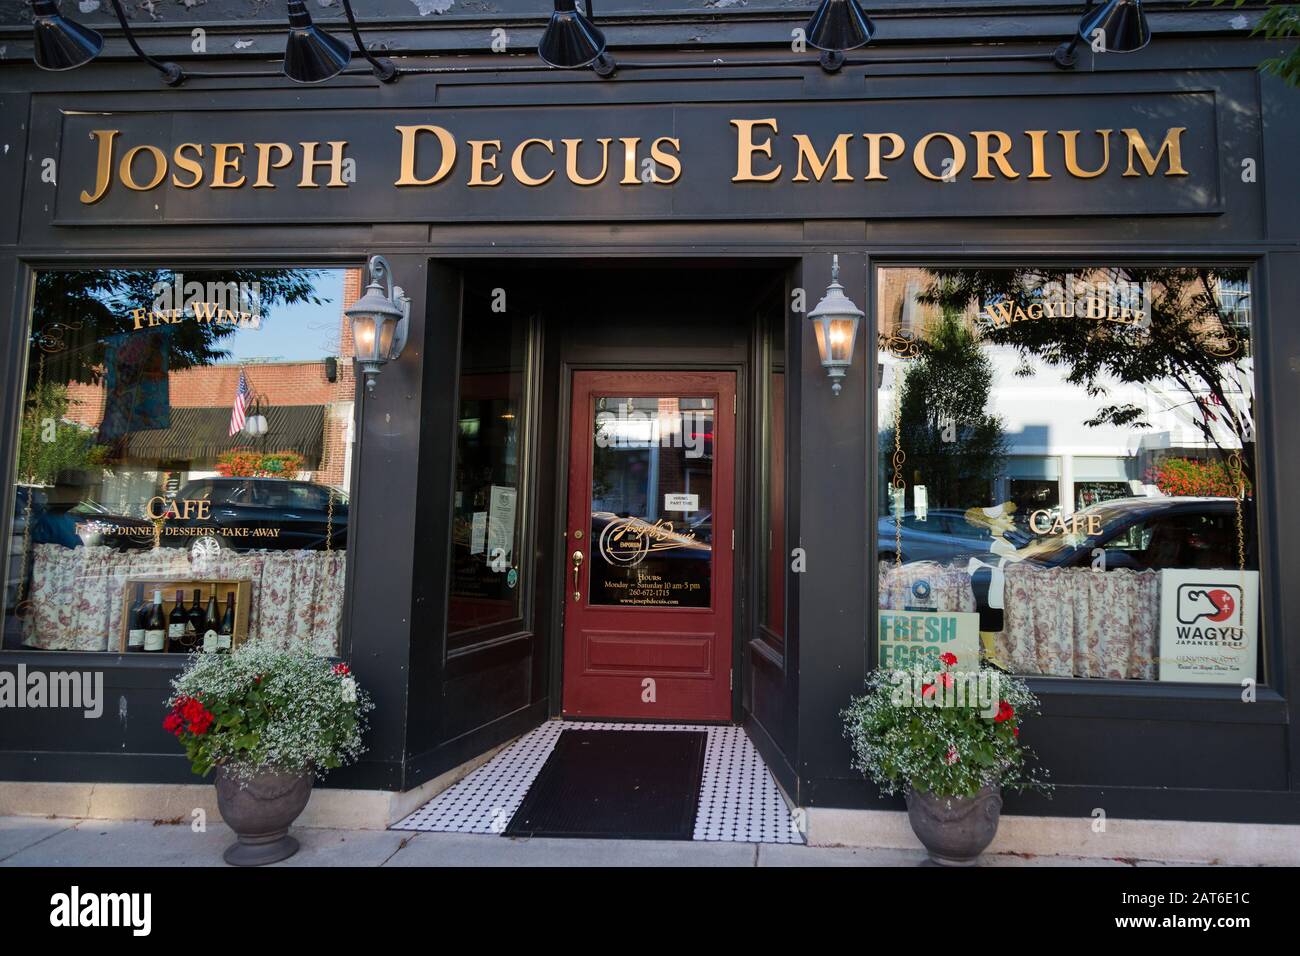 El moderno escaparate Joseph Decuis Emporium en Roanoke, Indiana, Estados Unidos. Foto de stock